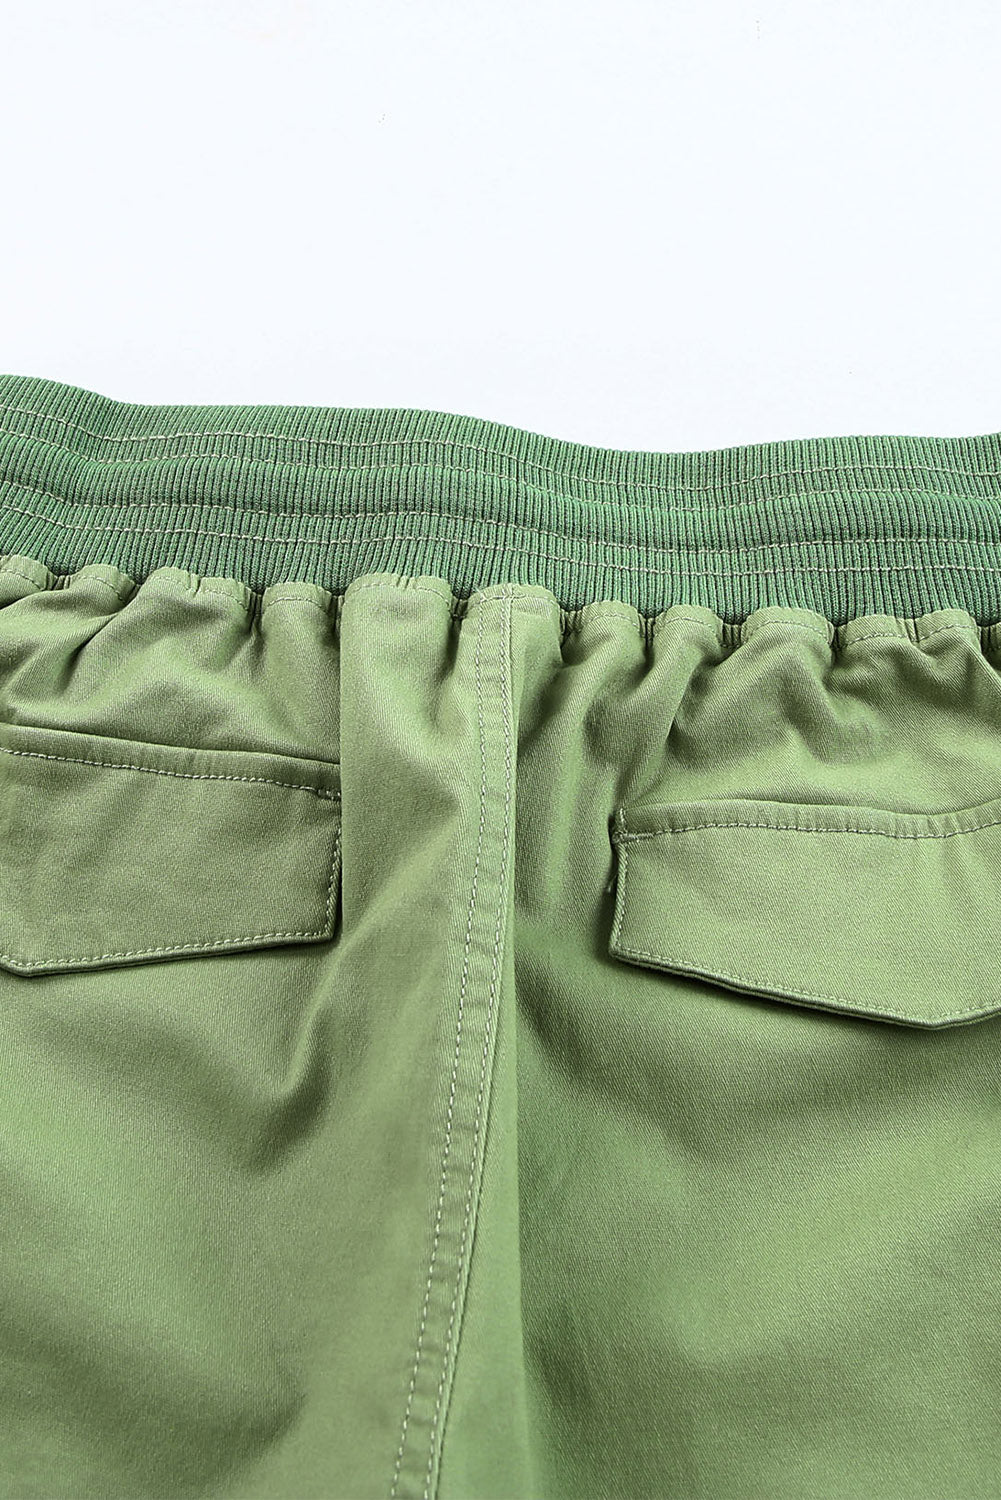 LC731204-9-S, LC731204-9-M, LC731204-9-L, LC731204-9-XL, LC731204-9-2XL, Green Cotton-Blend Casual Drawstring Shorts